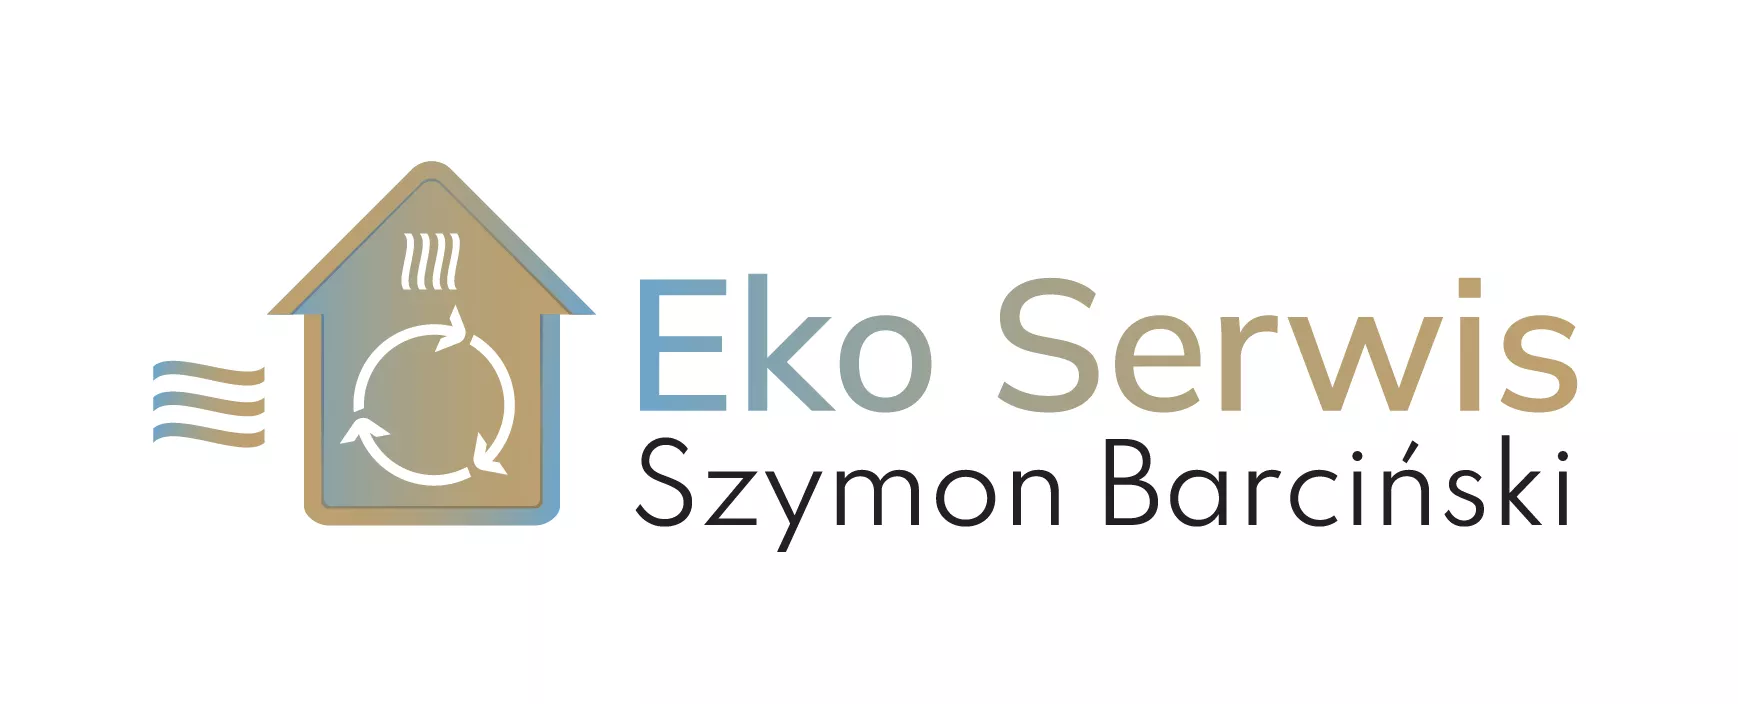 Eko Serwis Szymon Barciński Logo